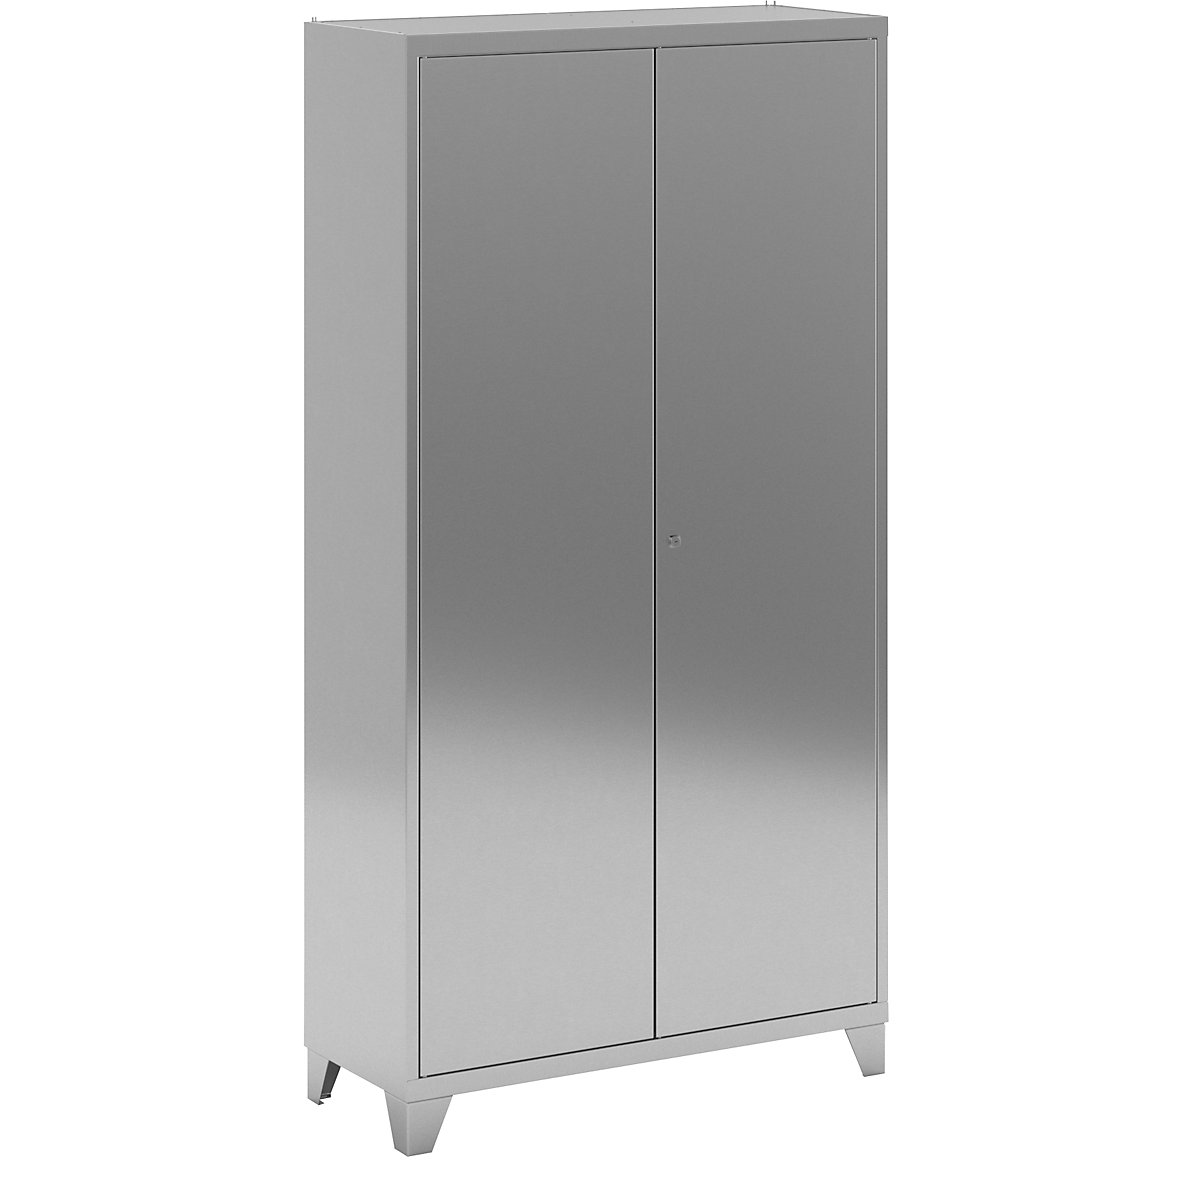 Stainless steel double door cupboard with stud feet